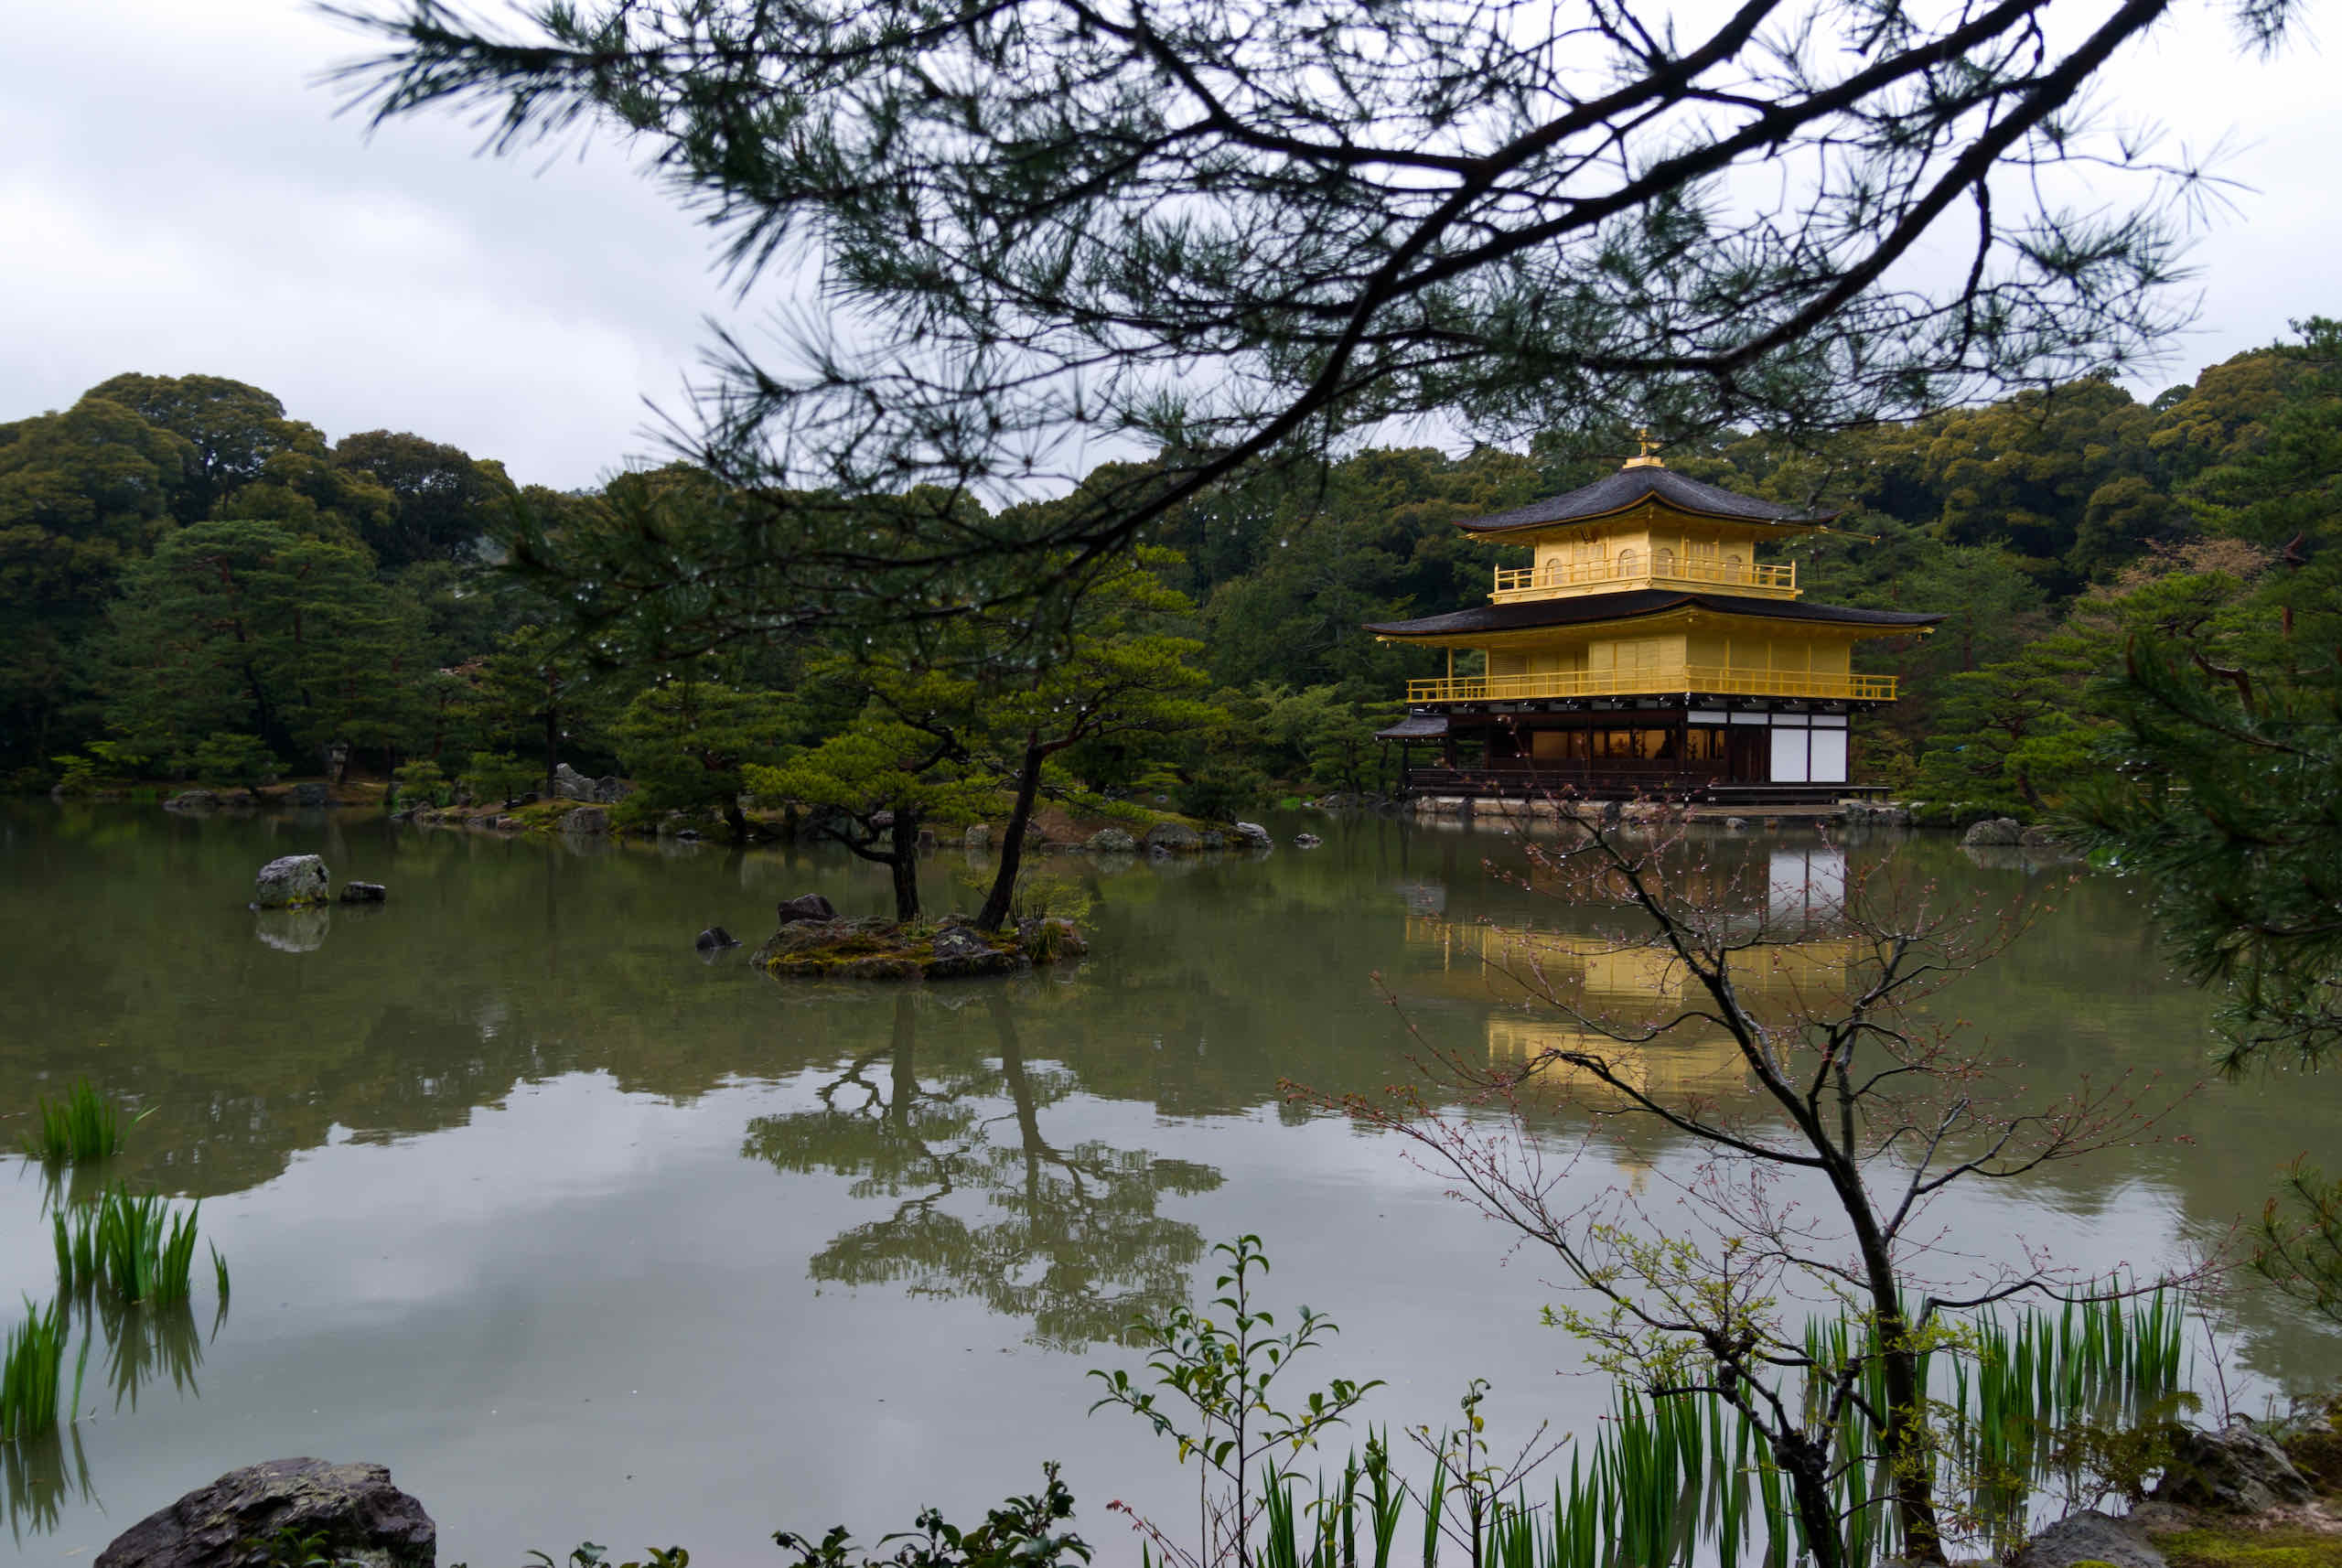 temple of the golden pavilion (金閣寺)